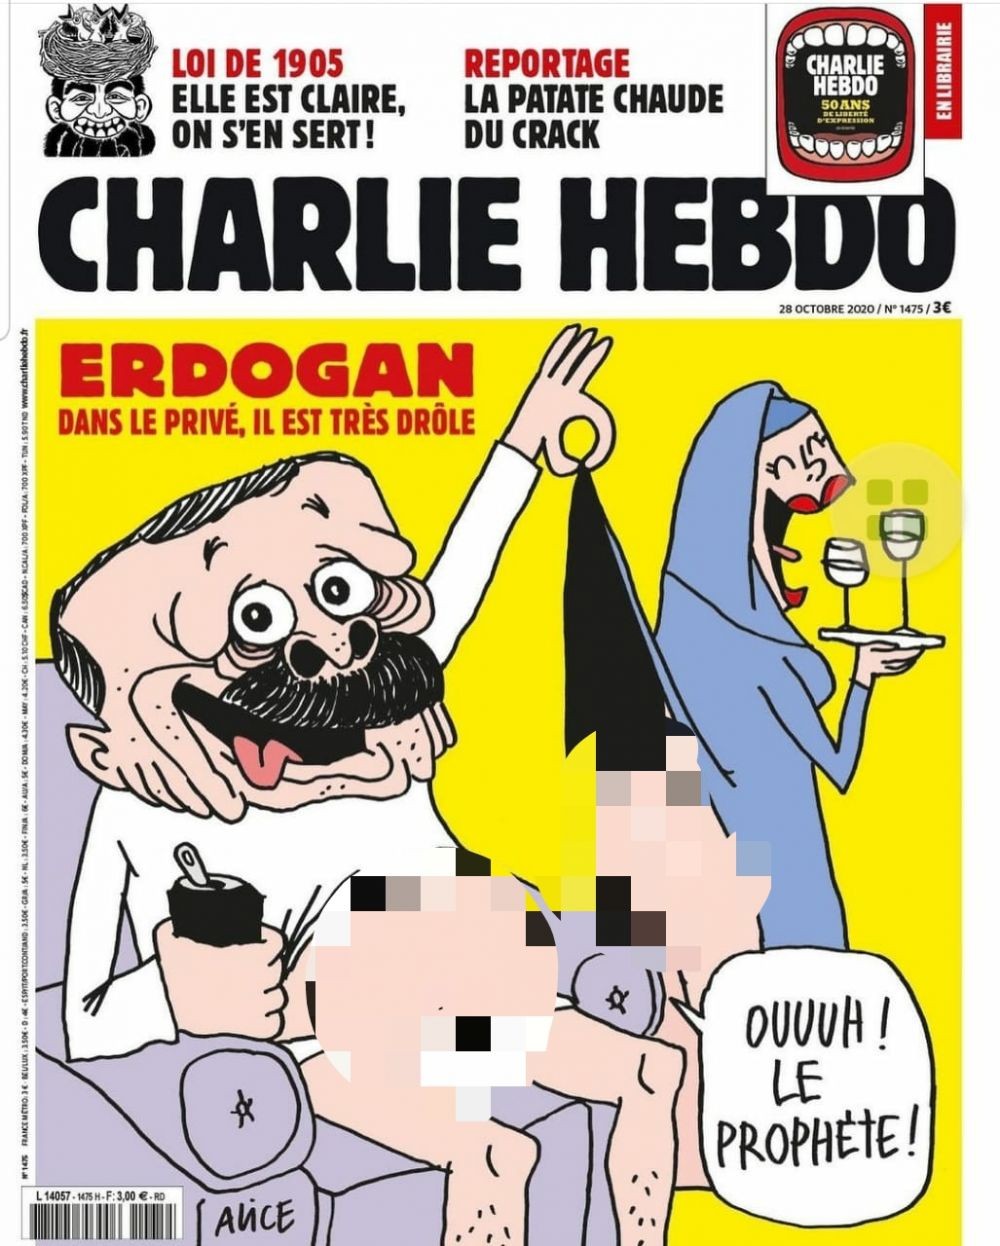 Presiden Erdogan Jadi Olok-olok di Sampul Depan Majalah Charlie Hebdo